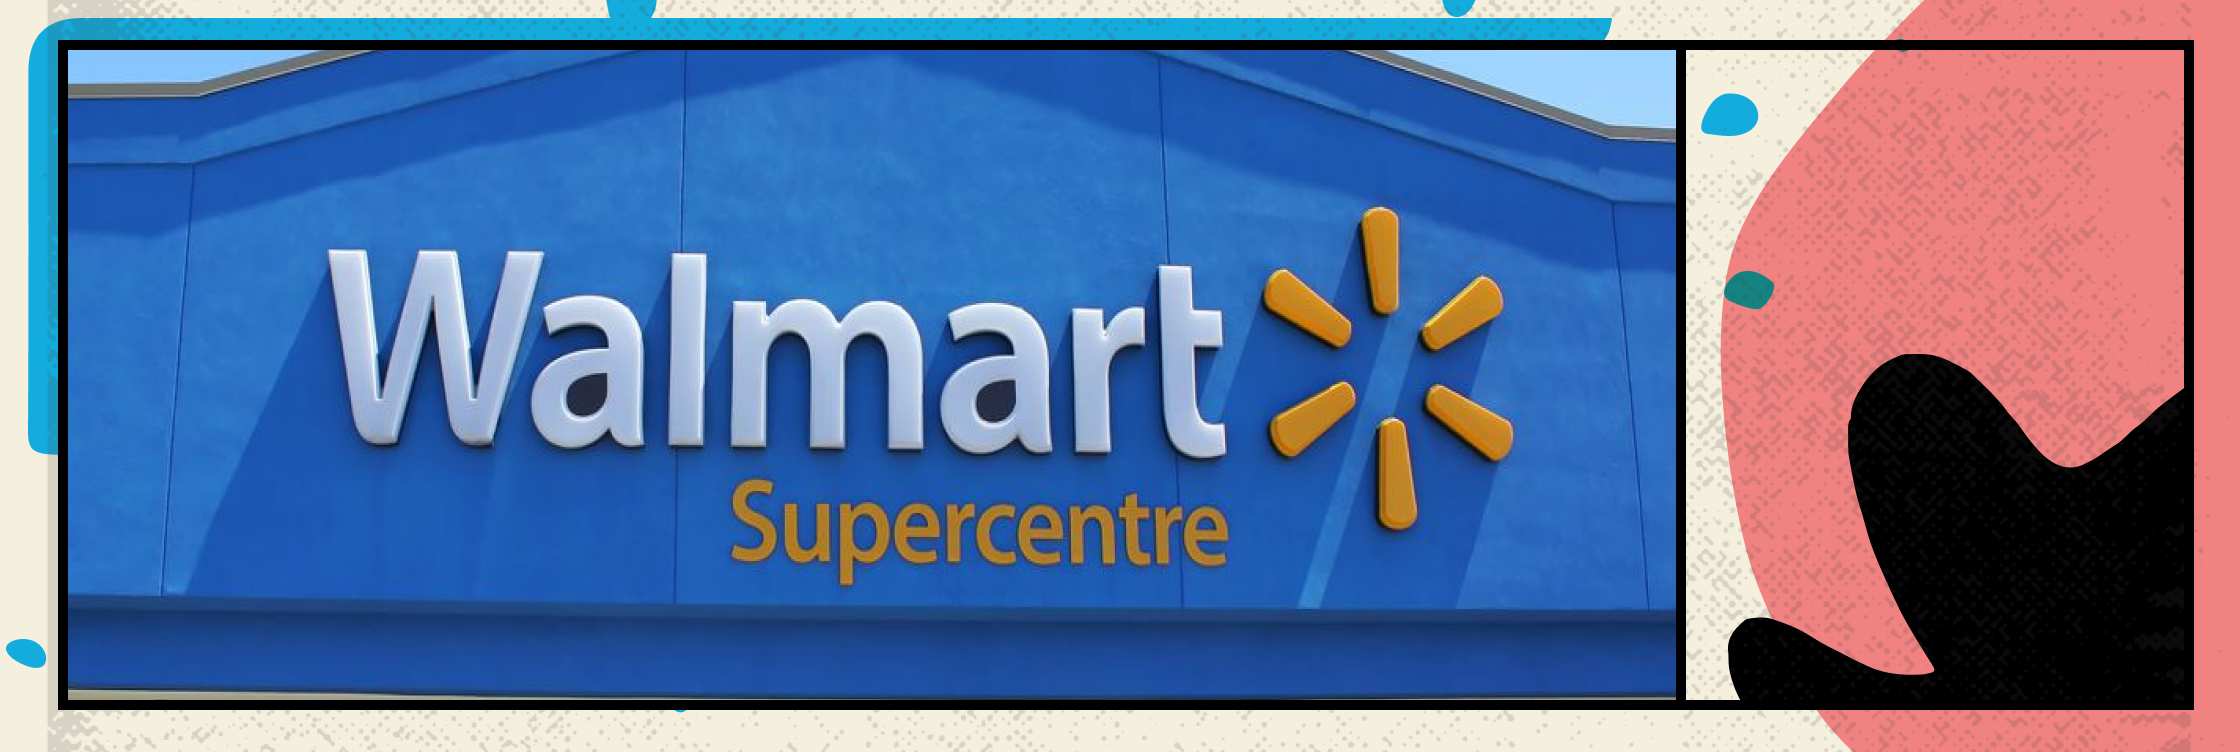 Walmart Canadá ha simplificado su logística mediante la implementación de blockchain